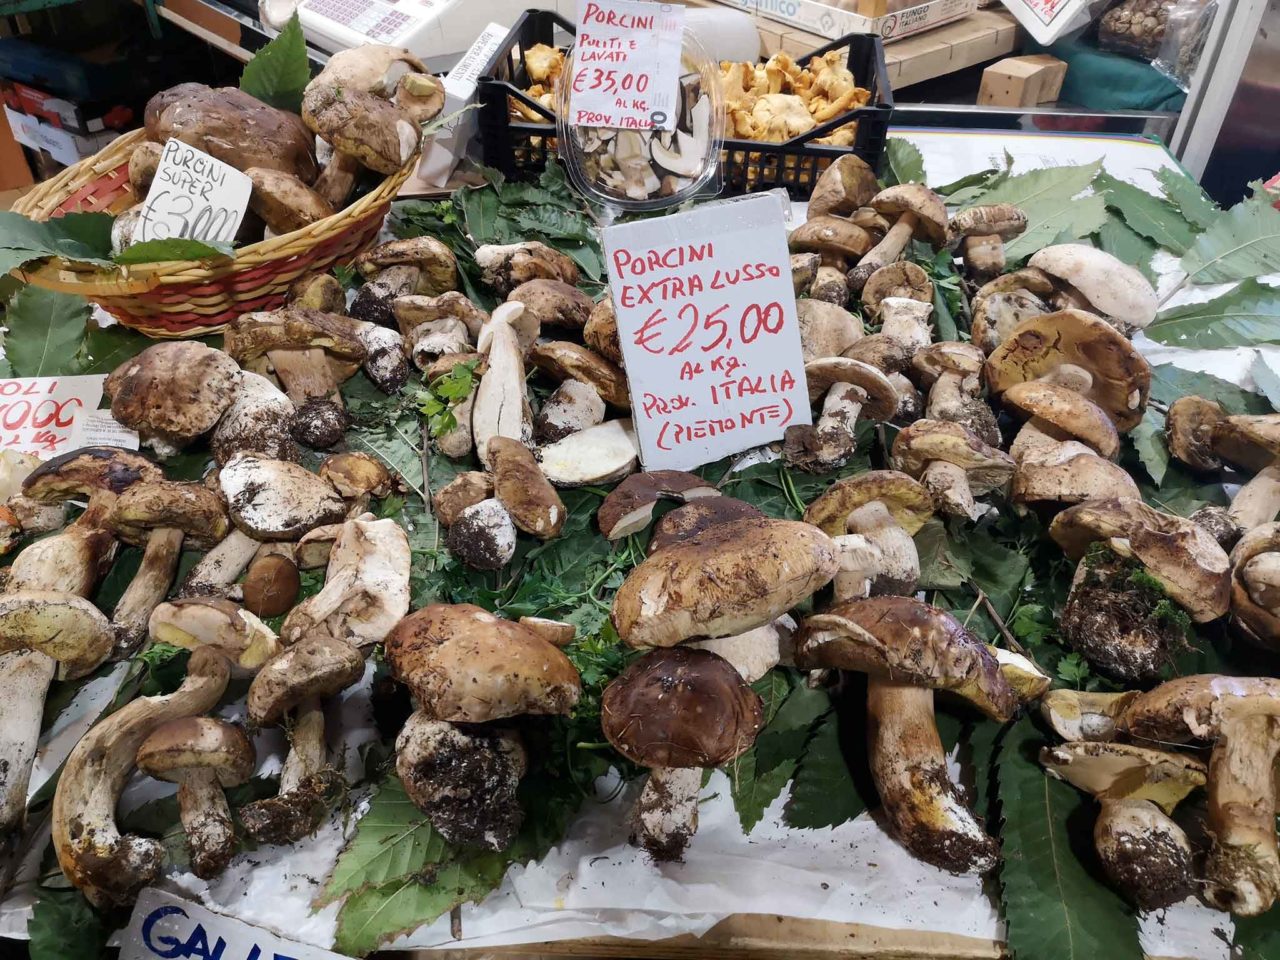 funghi porcini prezzo